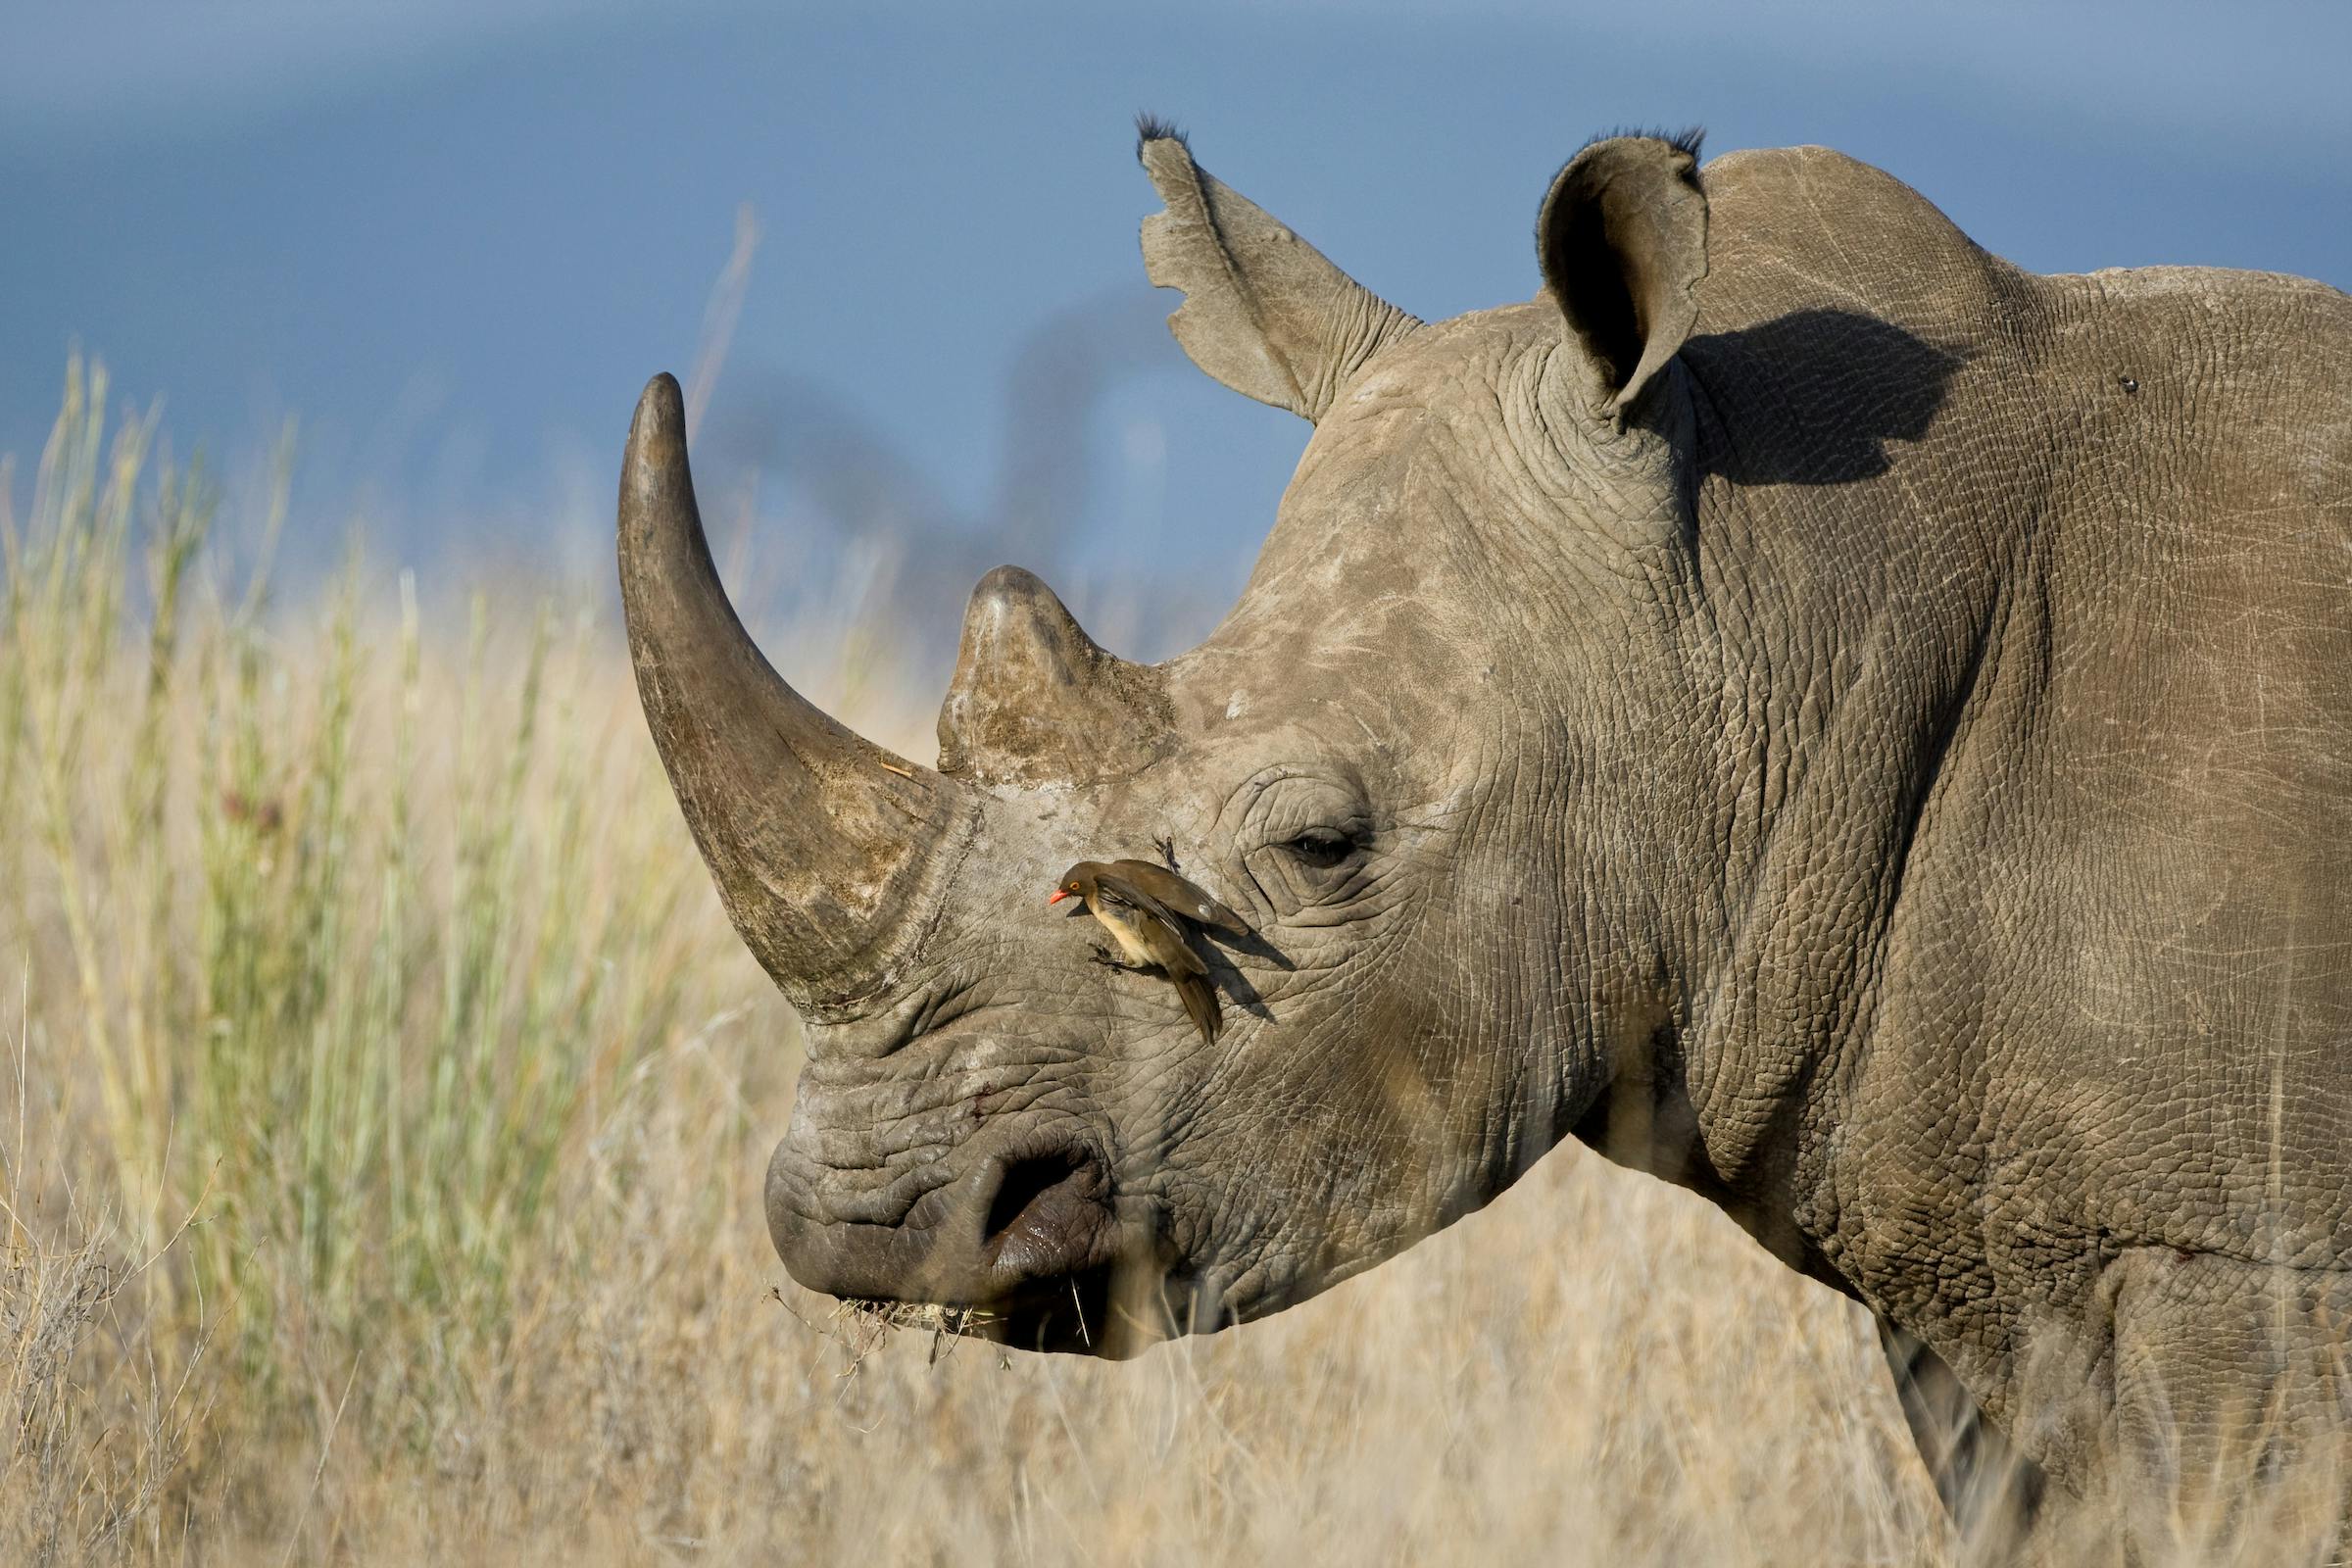 Oxpeckers: The Rhino’s Guard